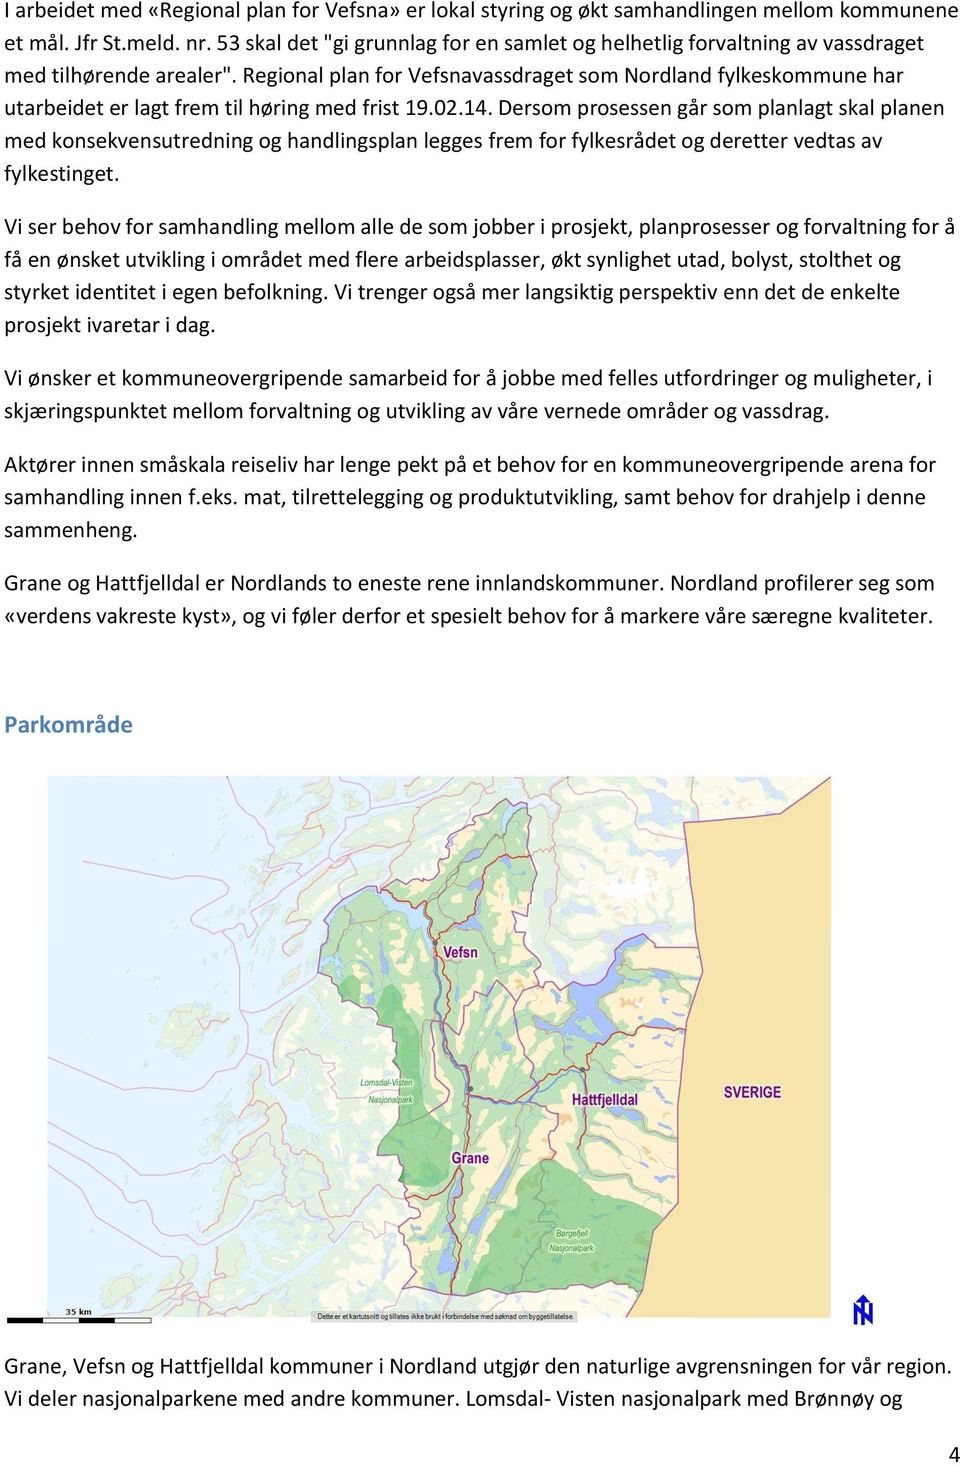 Regional plan for Vefsnavassdraget som Nordland fylkeskommune har utarbeidet er lagt frem til høring med frist 19.02.14.